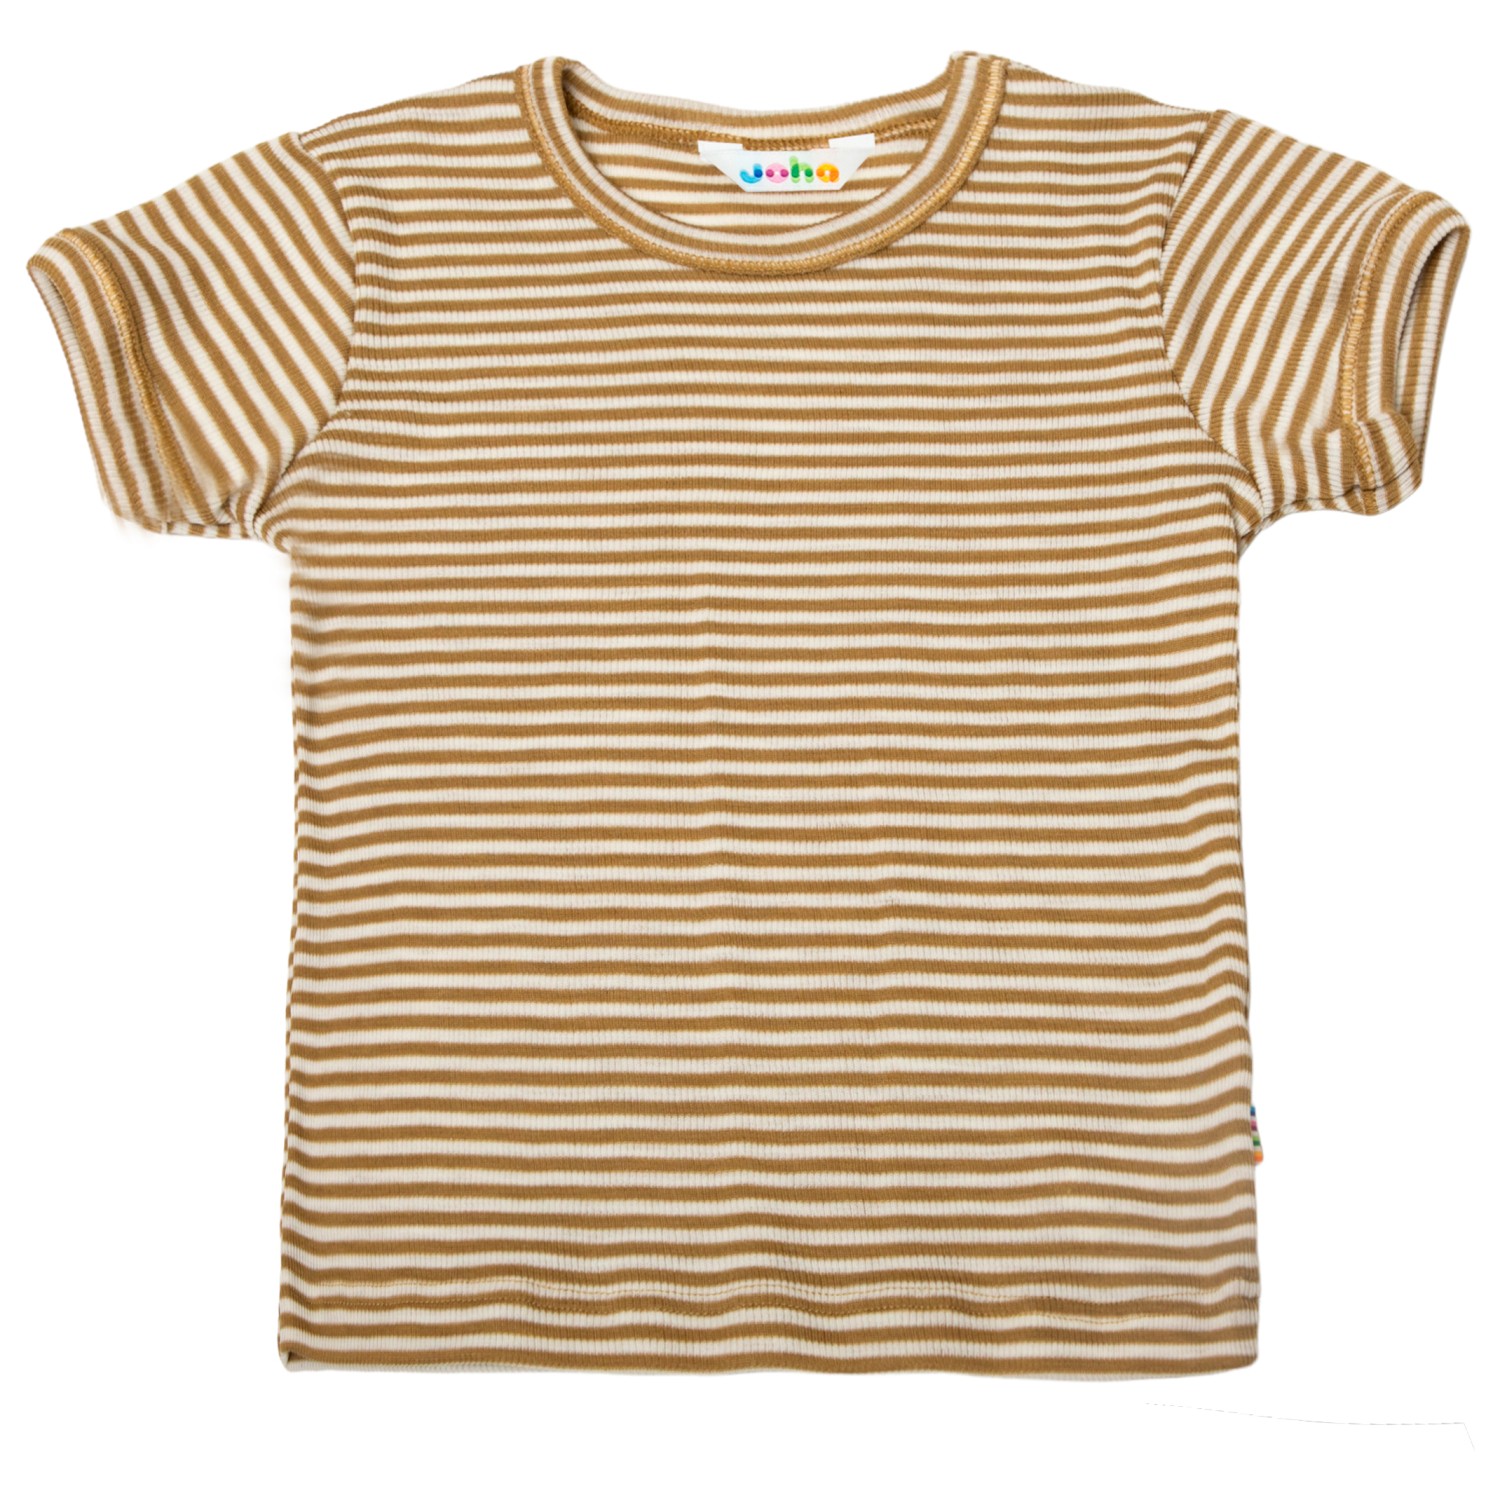 Рубашка из мериноса Joha Kid's Blouse S/S 17285, хаки цена и фото